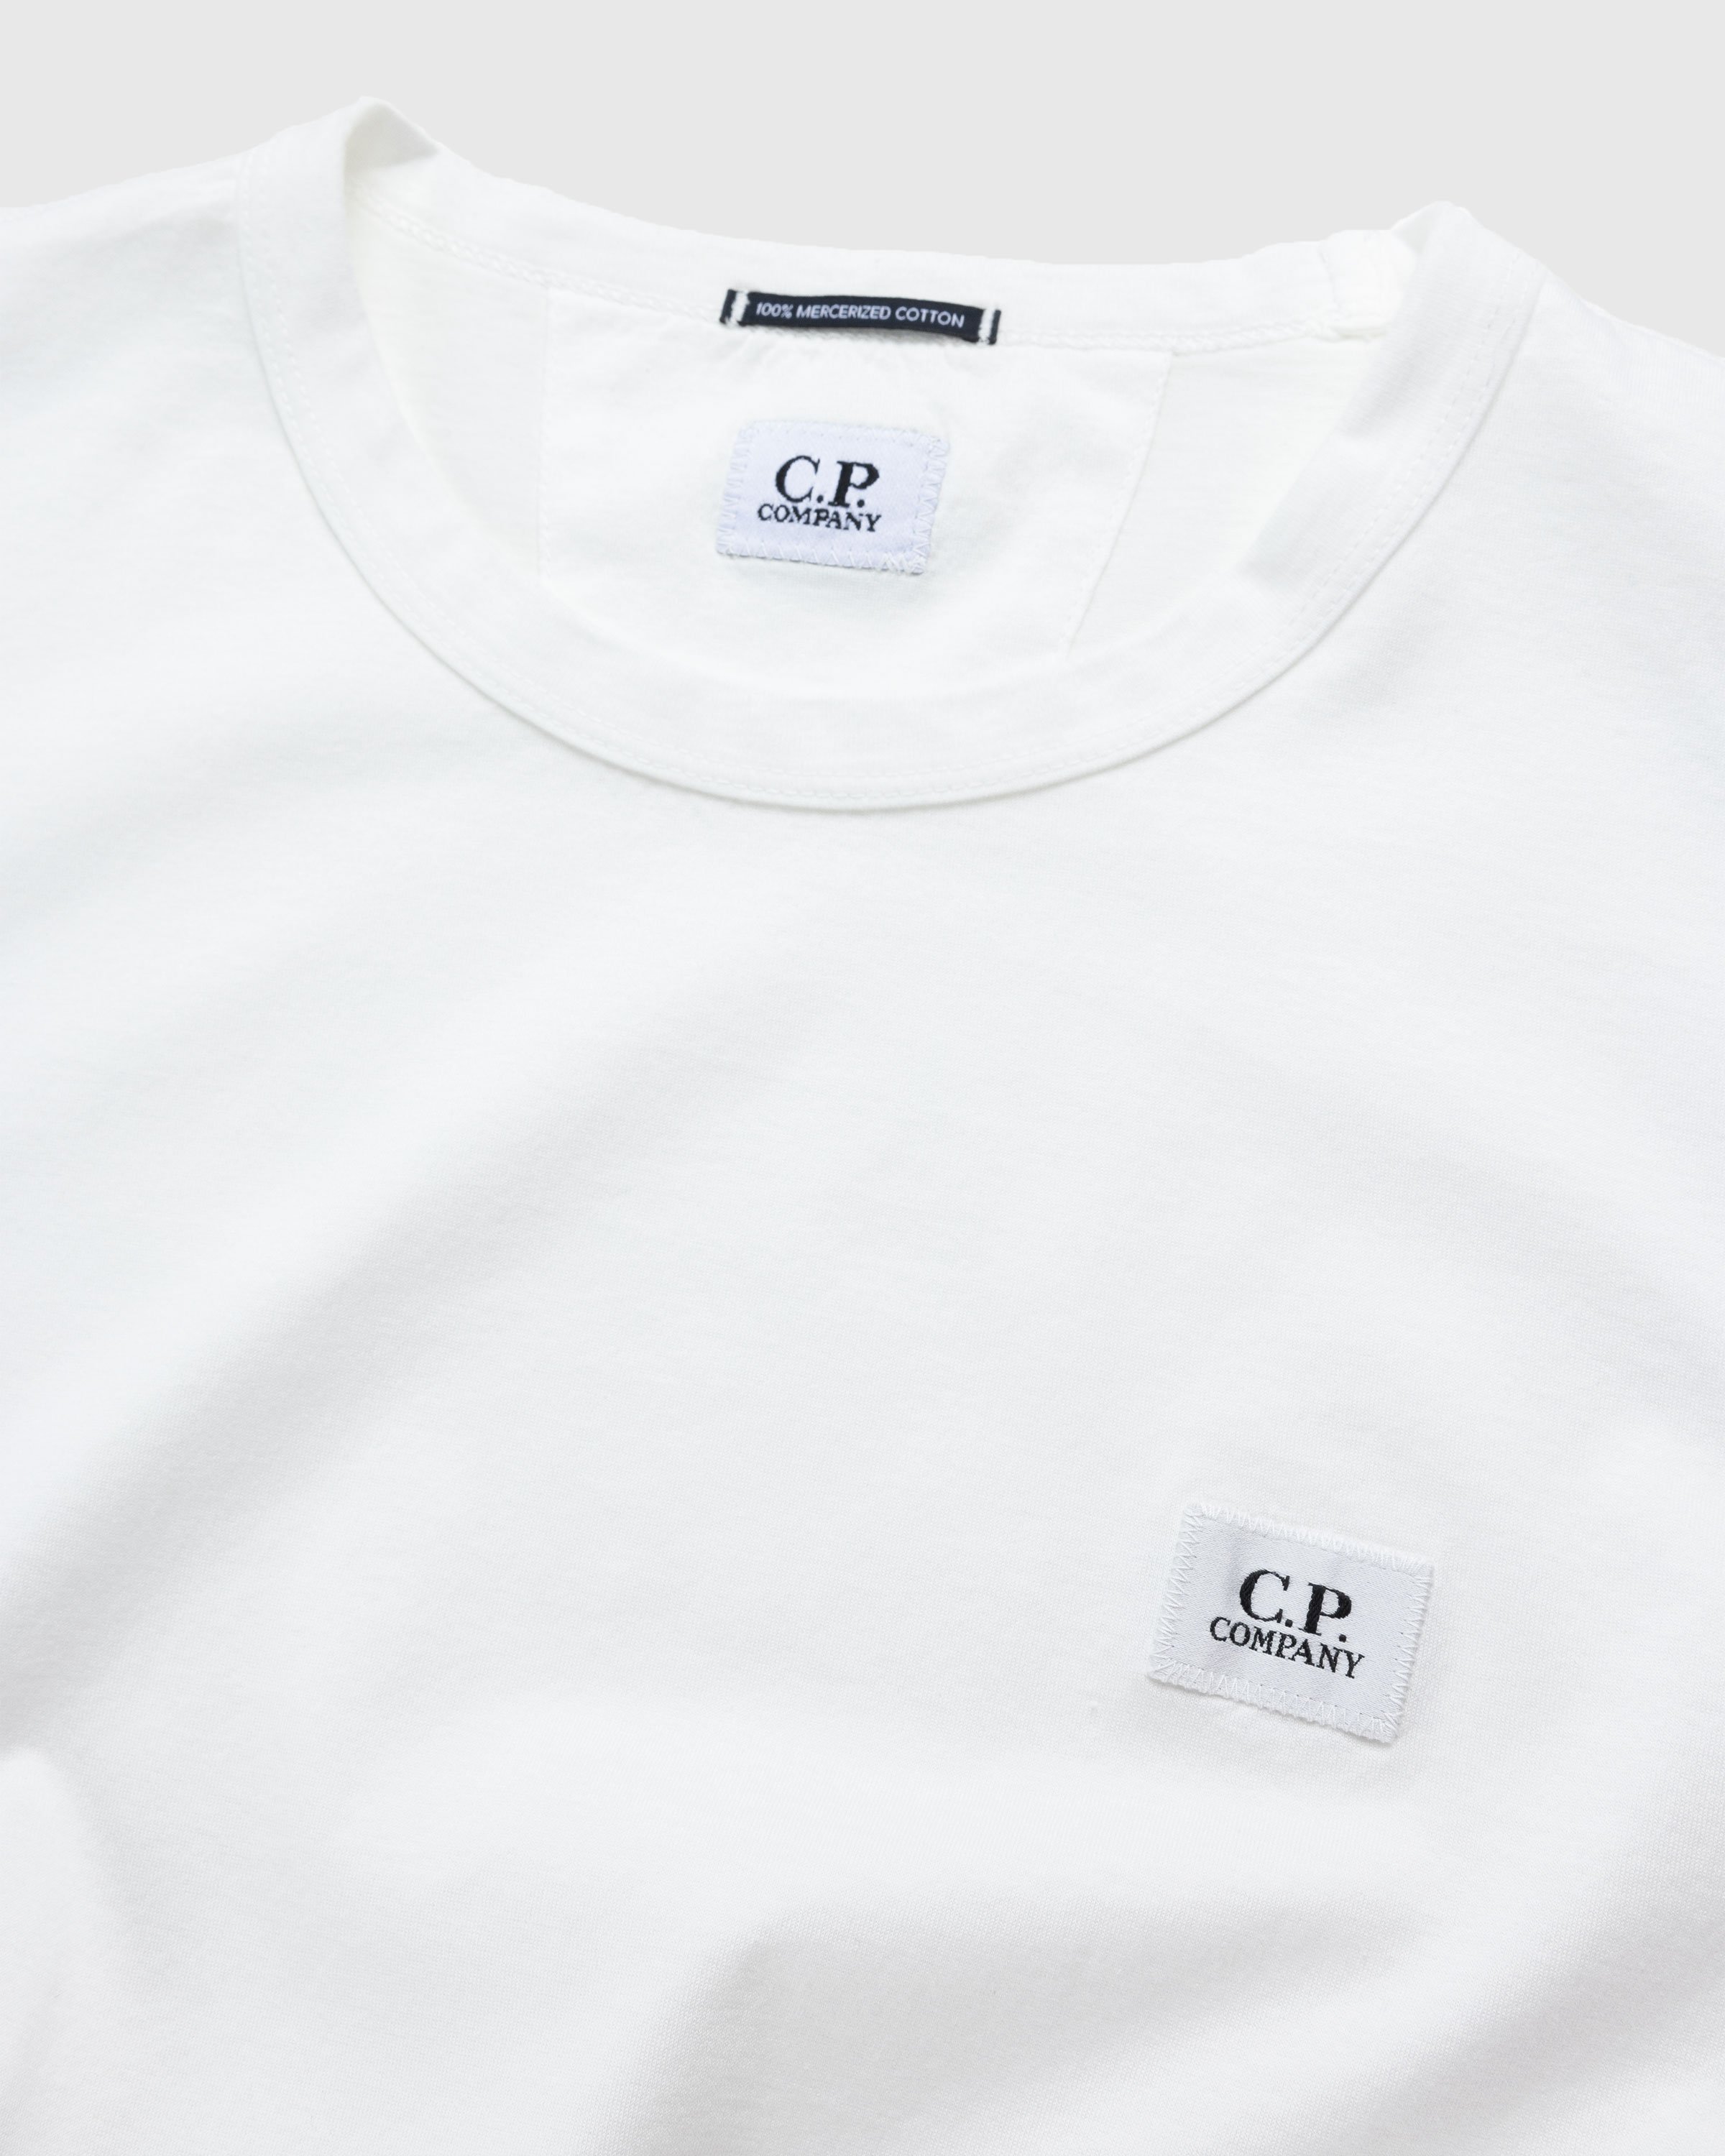 C.P. Company - T-SHIRTS - SHORT SLEEVE GAUZE WHITE - Clothing - White - Image 6